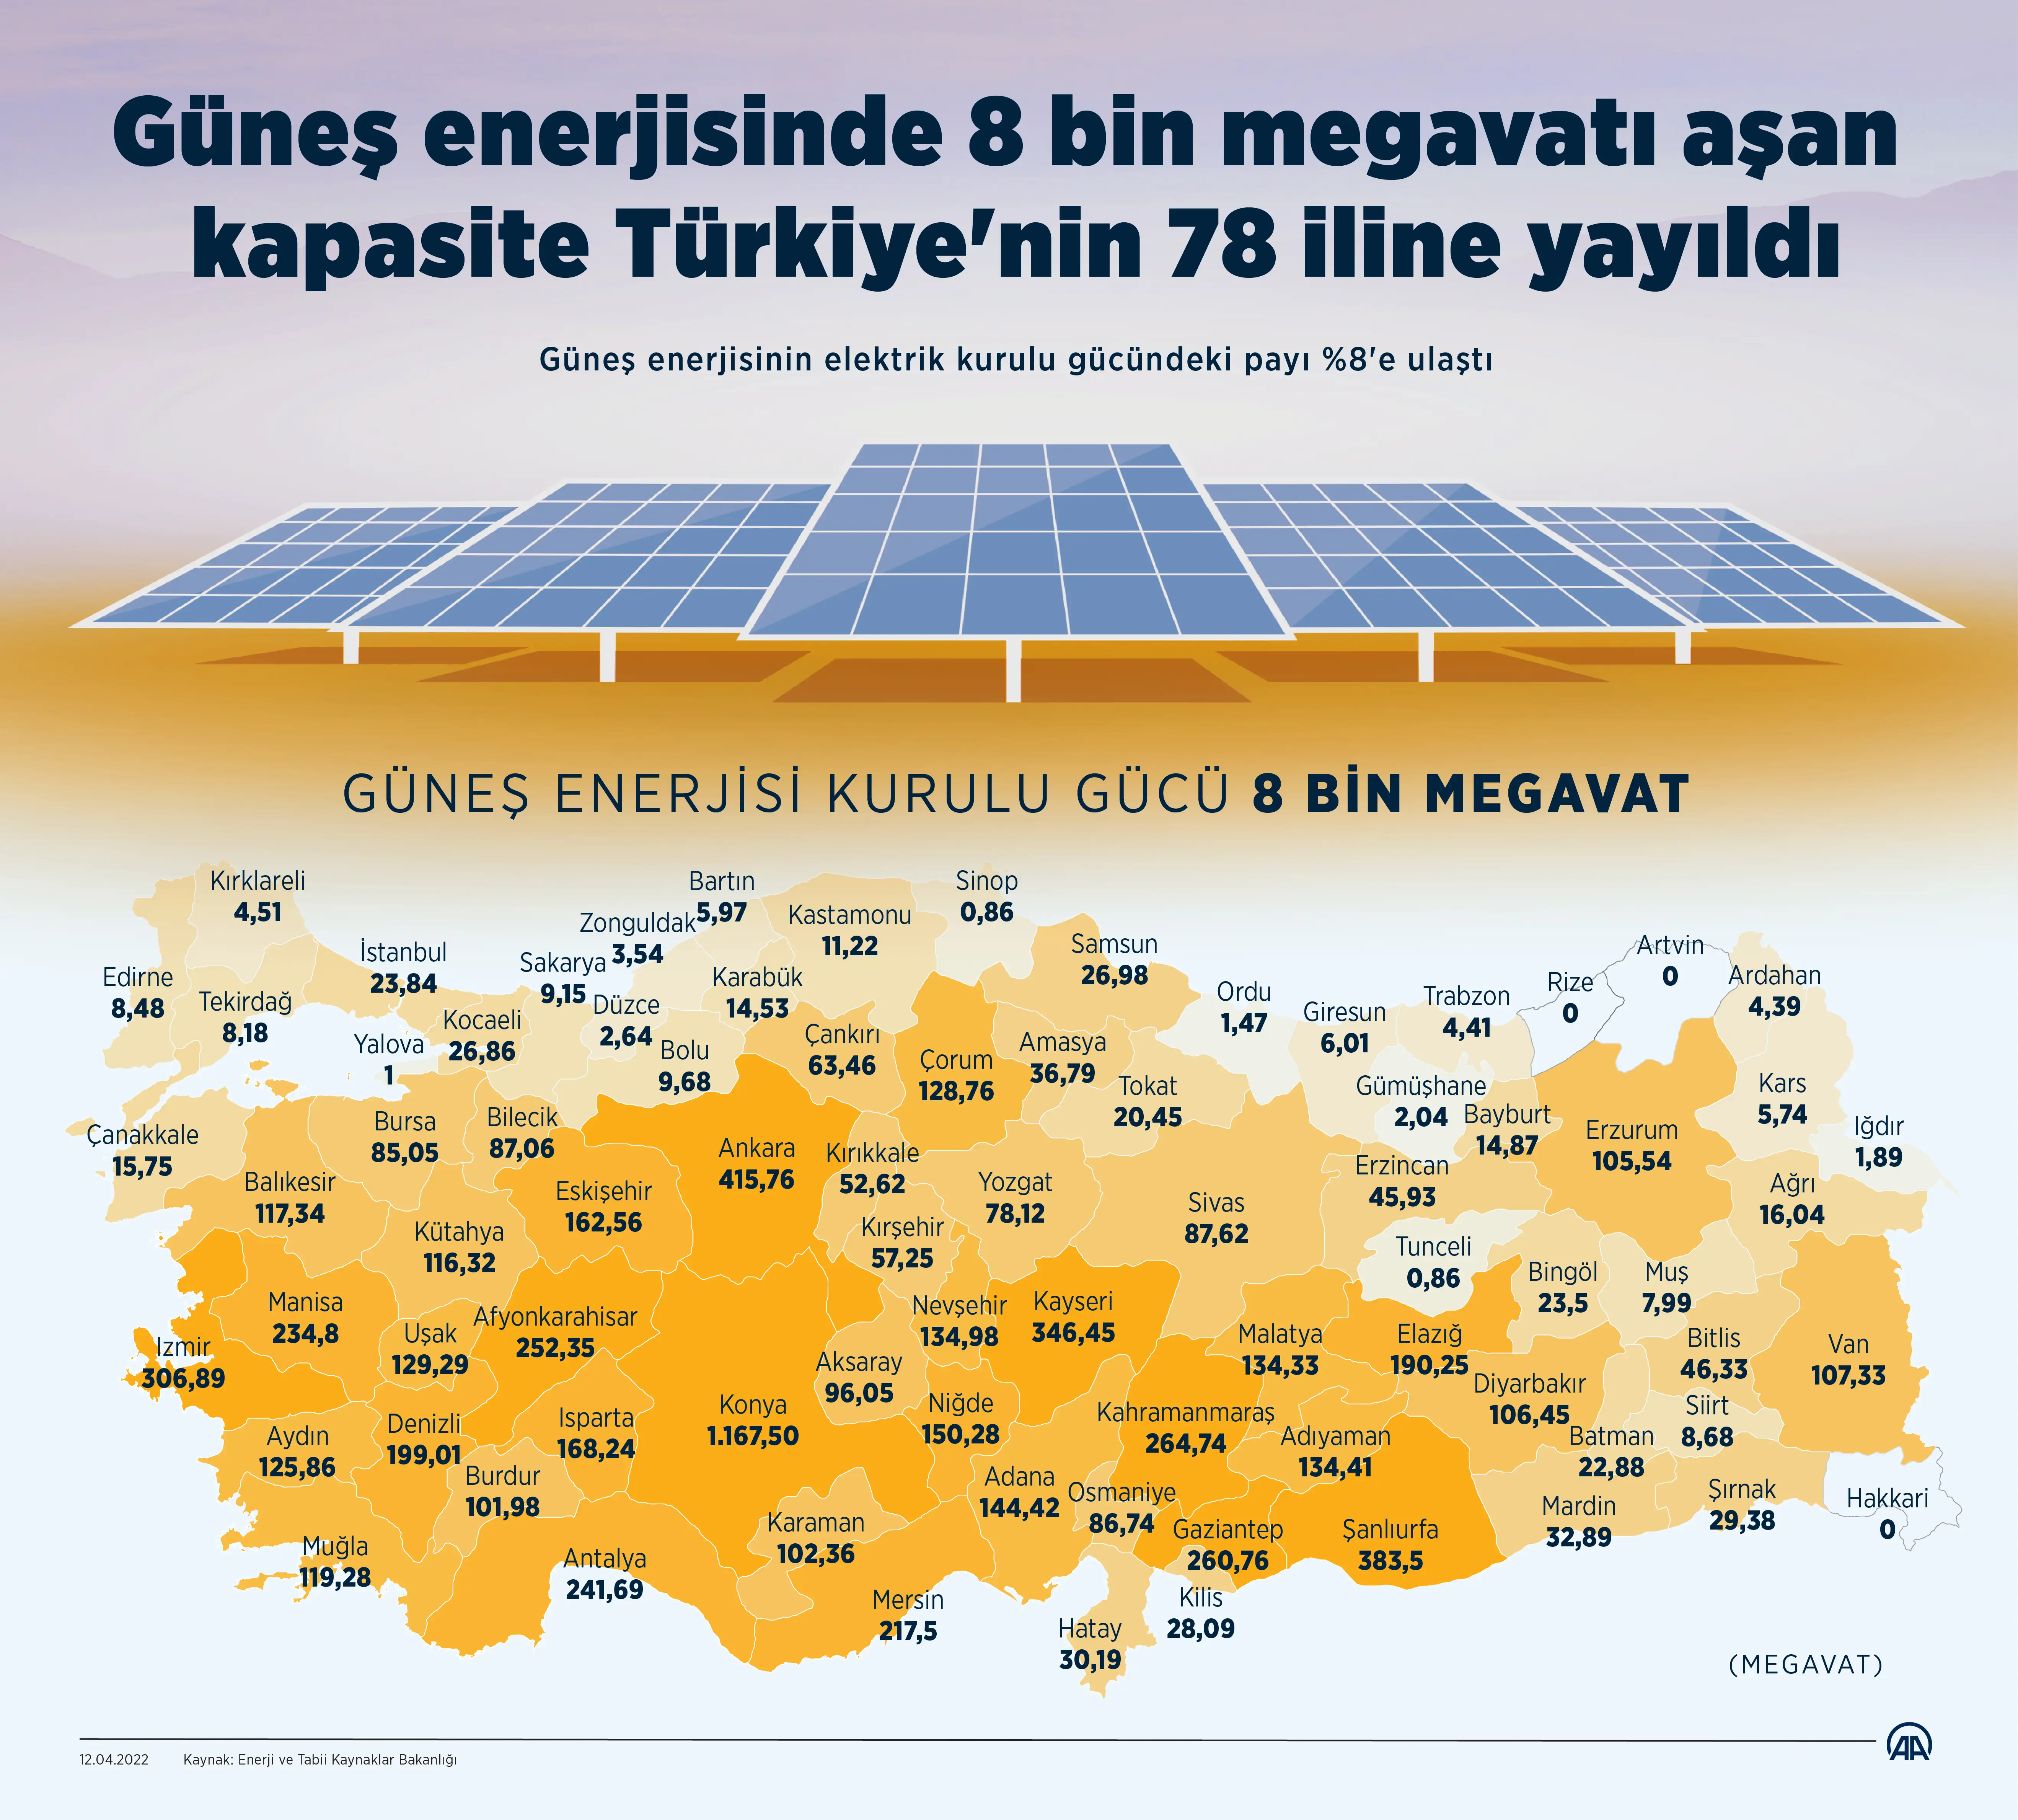 Türkiye'nin mevcut elektrik kurulu gücü 100 bin 334 megavata, güneş enerjisinin elektrik kurulu gücündeki payı da yüzde 8'e ulaştı